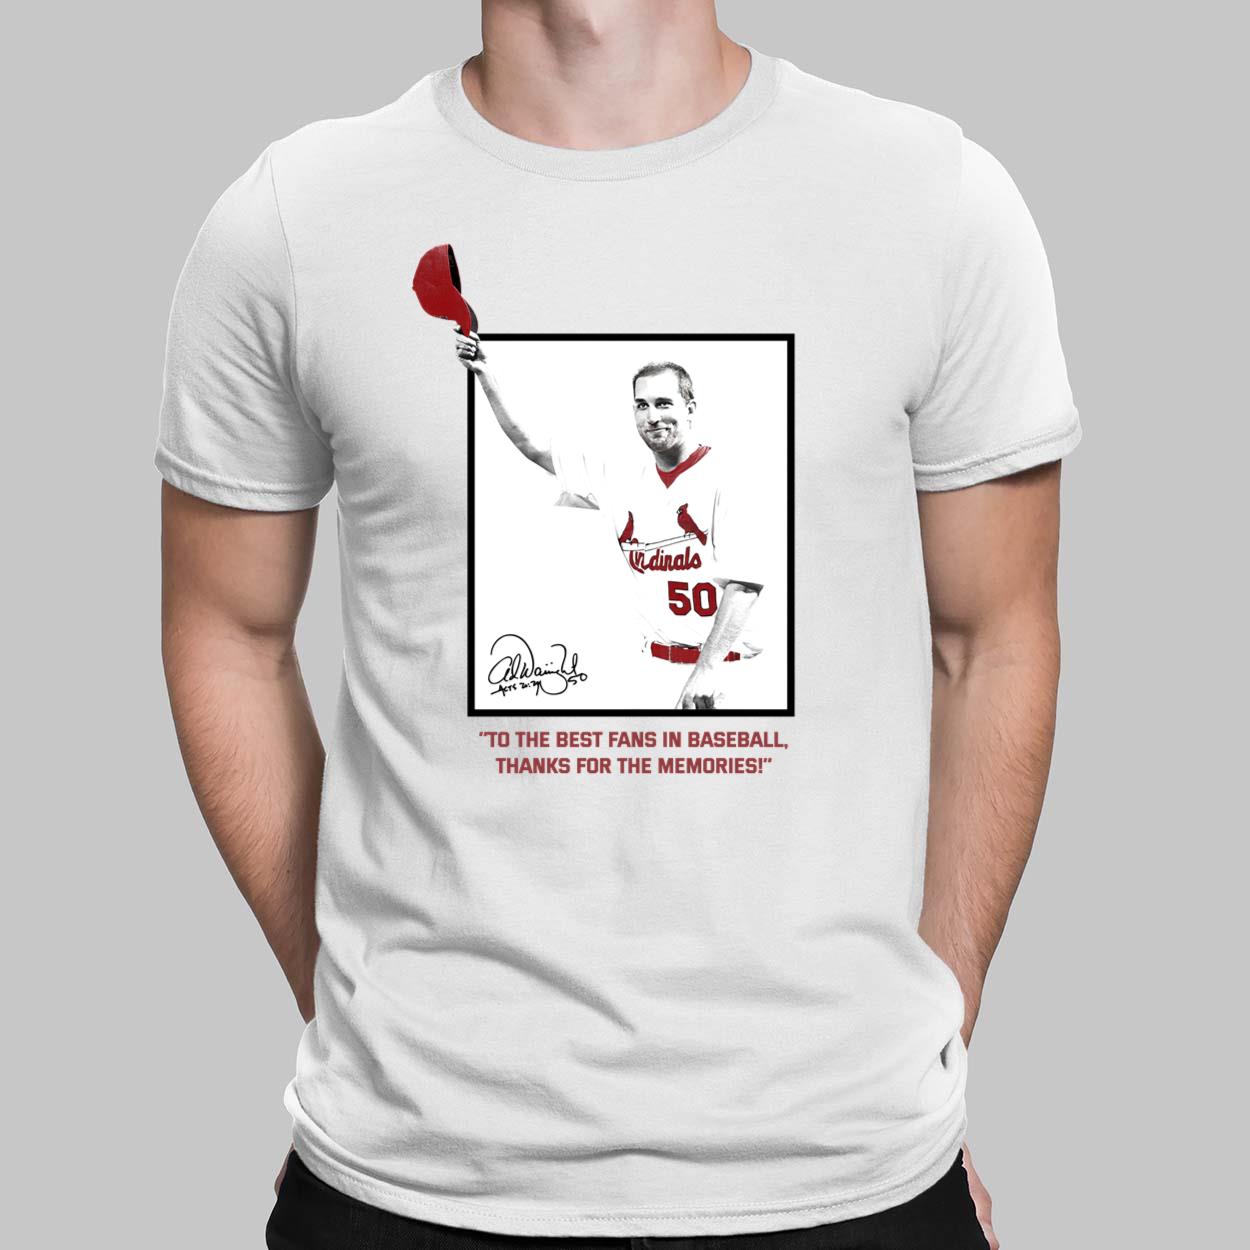 Adam Wainwright Baseball Tee Shirt, St. Louis Baseball Men's Baseball T- Shirt